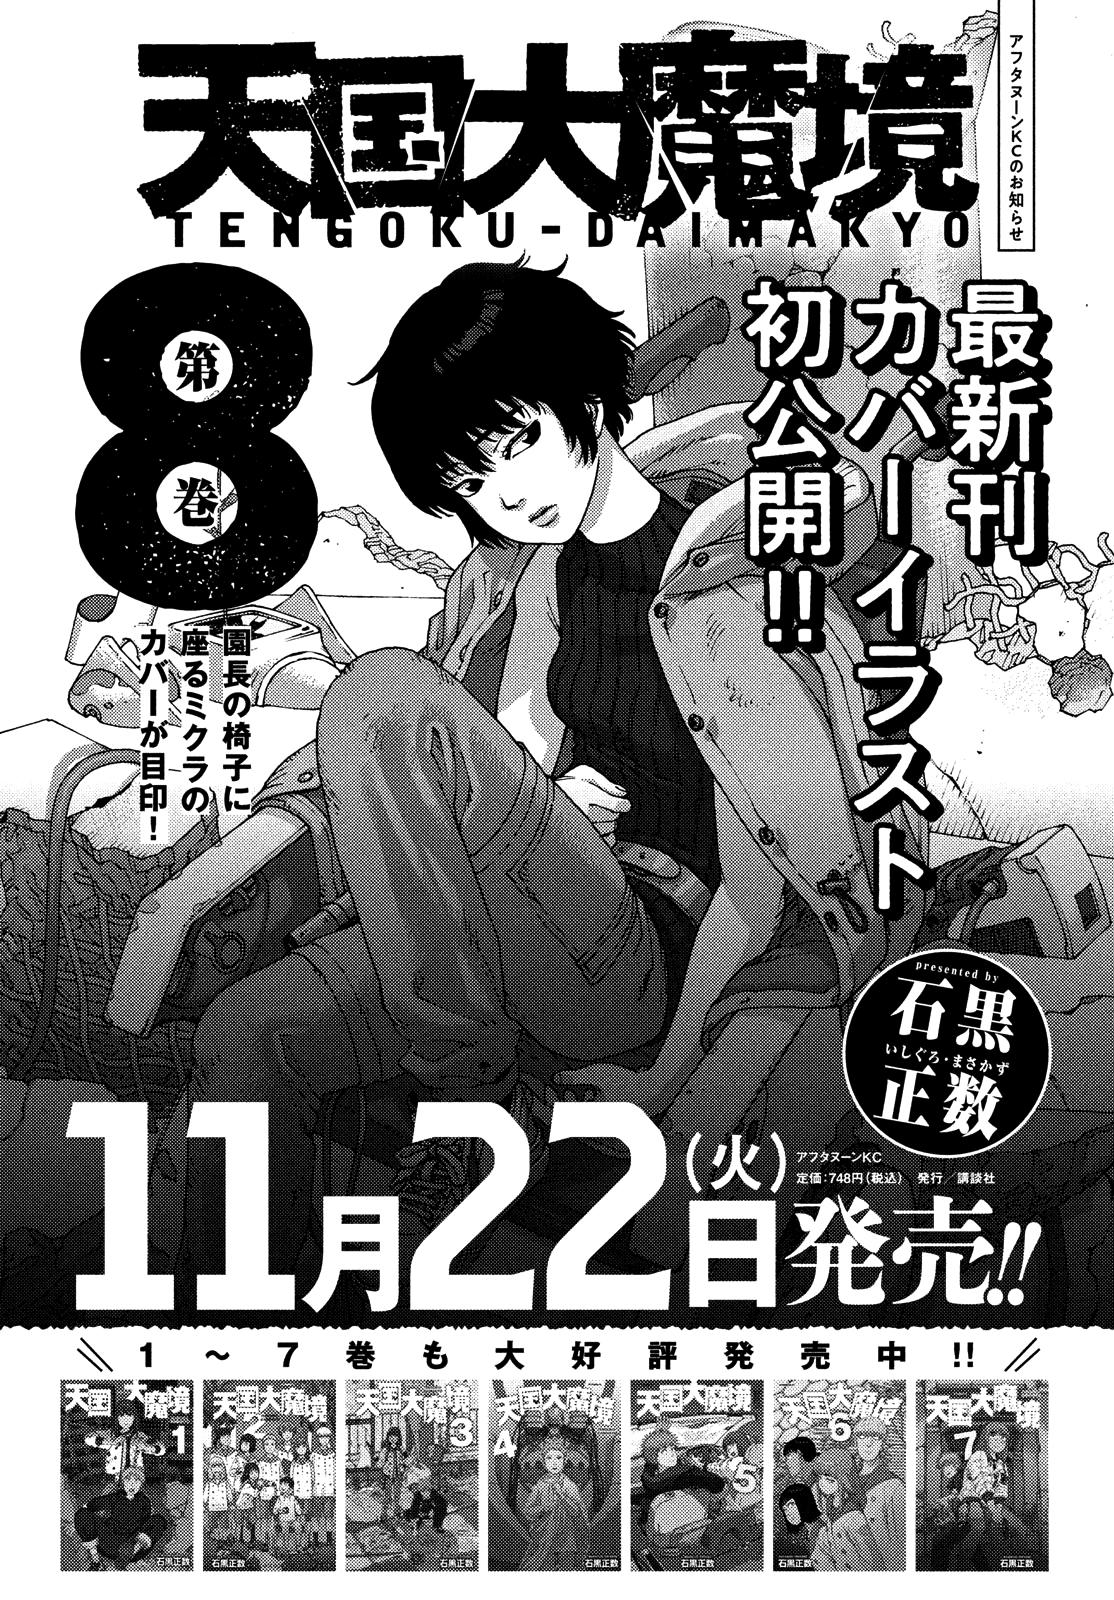 Tengoku Daimakyou Vol.8 Chapter 49: Michika ➀ page 38 - Mangakakalot